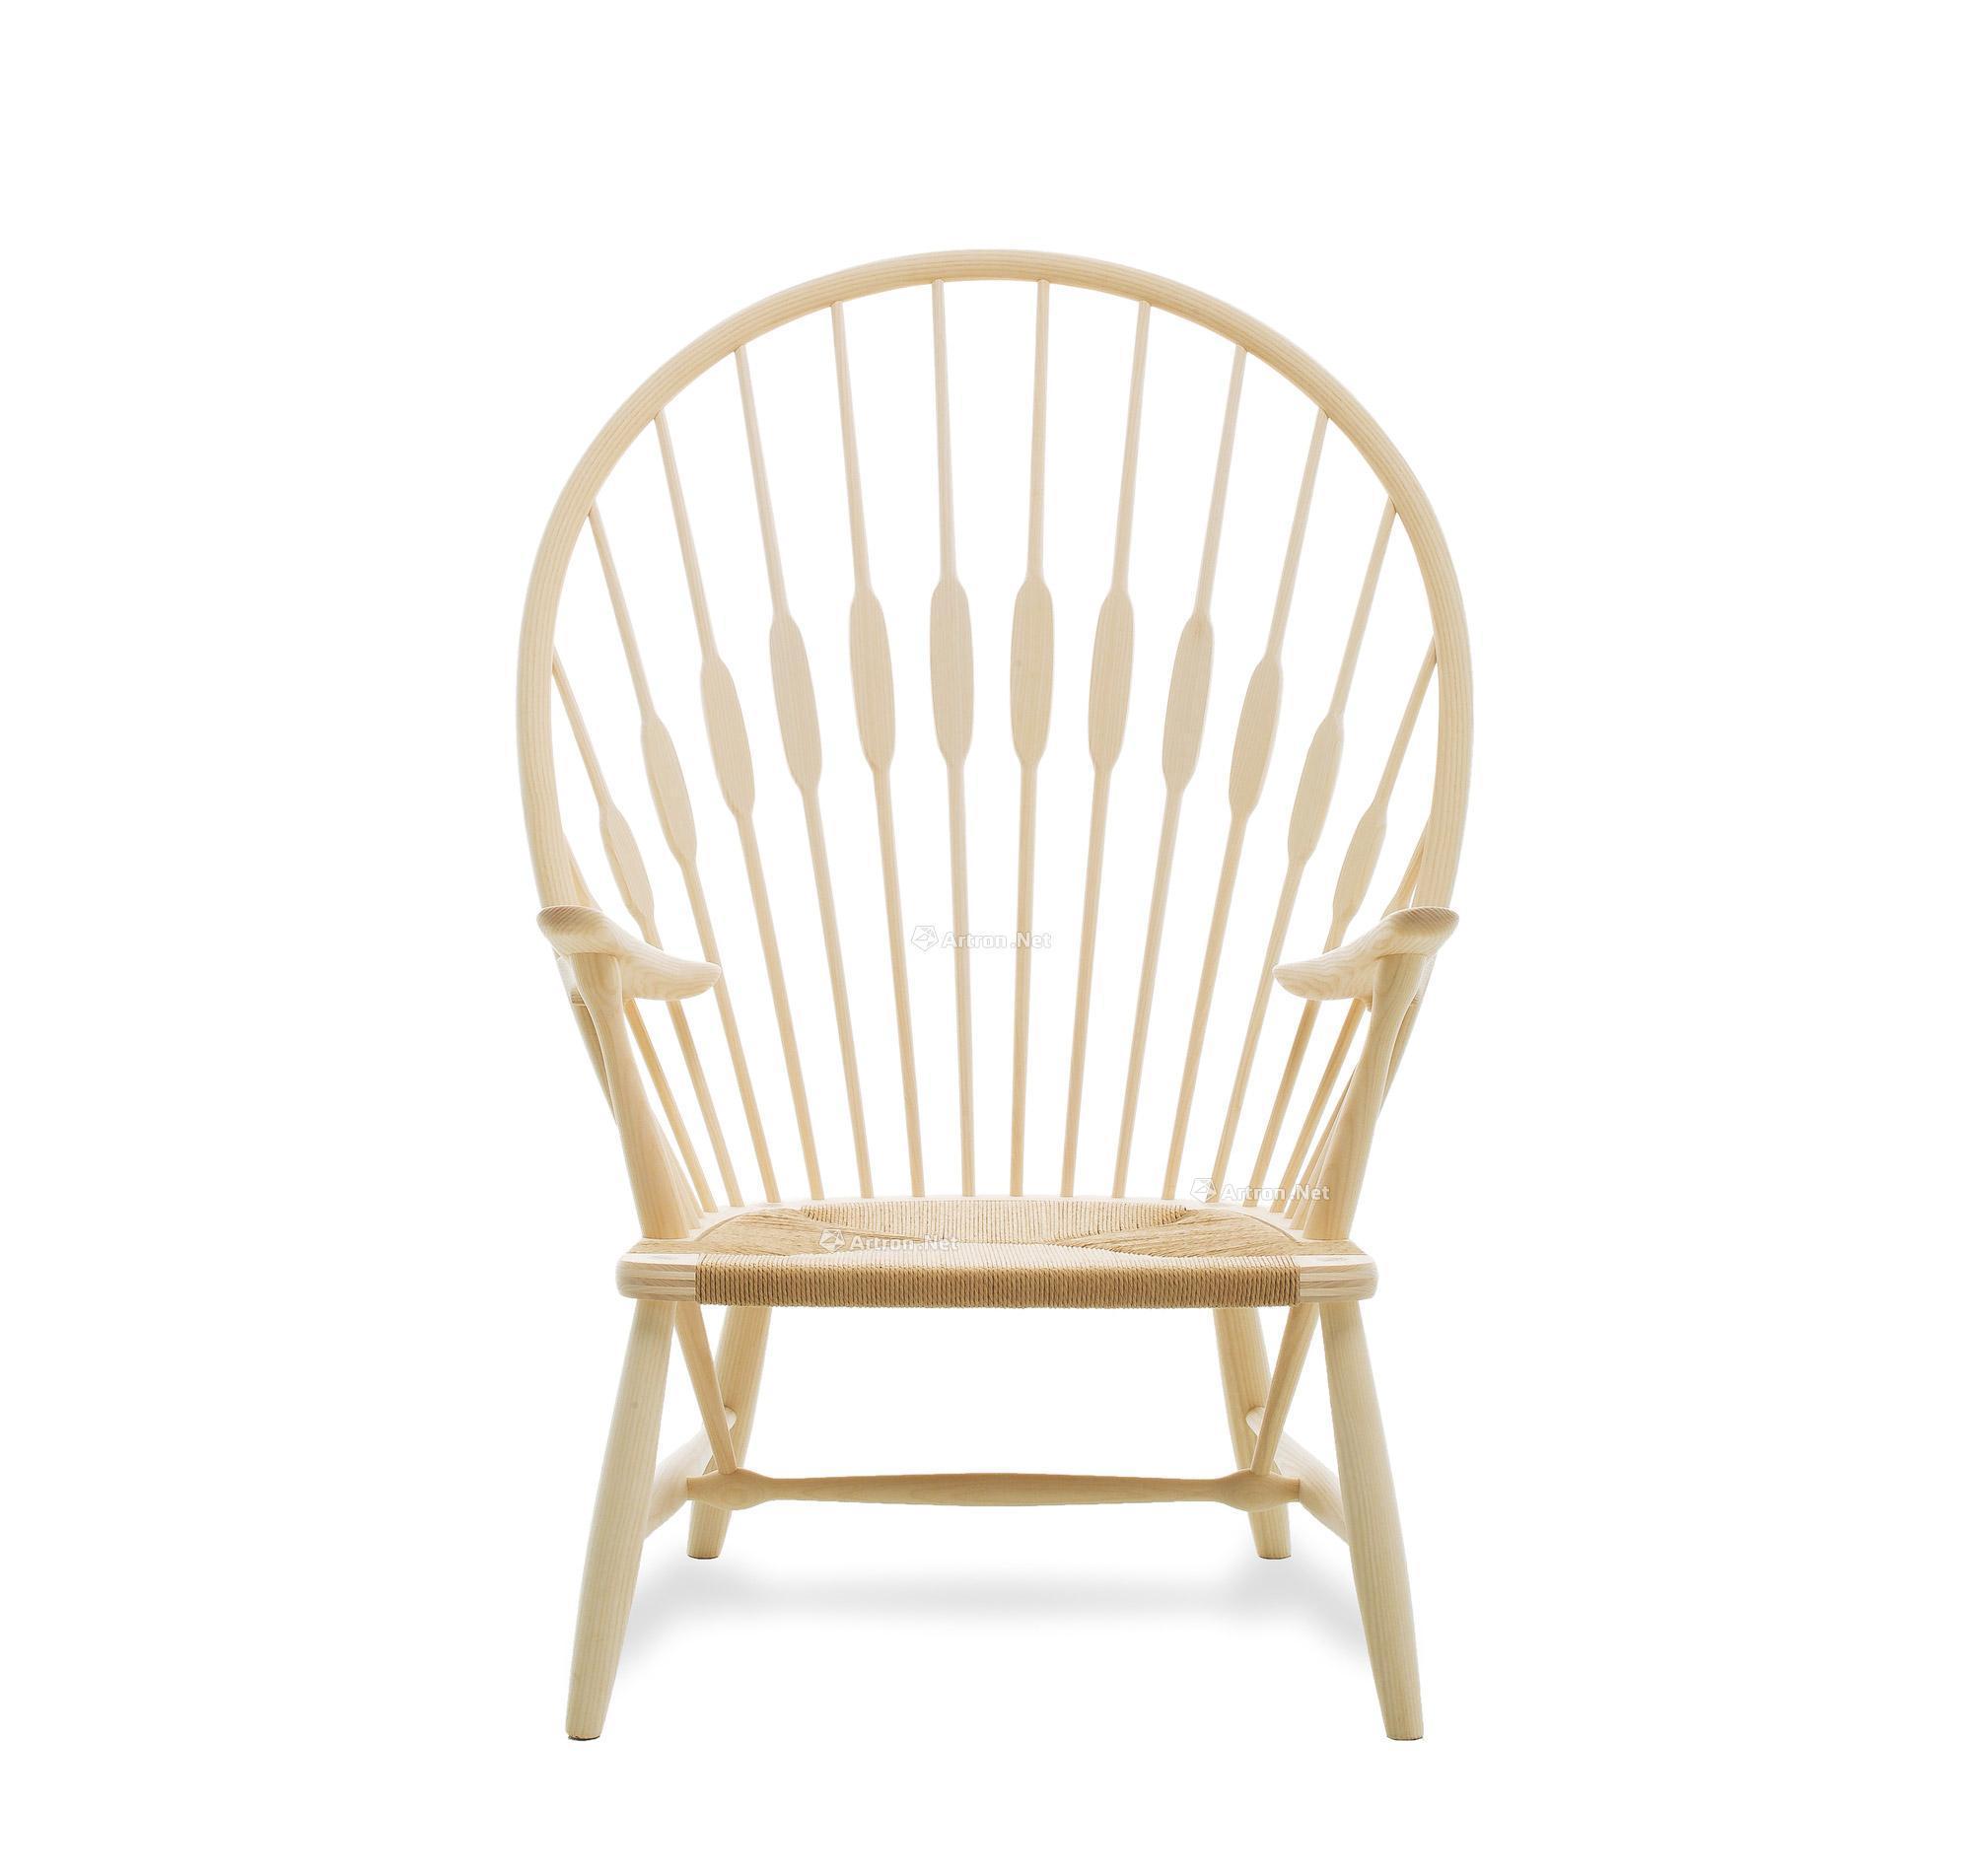 1513 1947年设计 汉斯·瓦格纳 孔雀椅 pp550